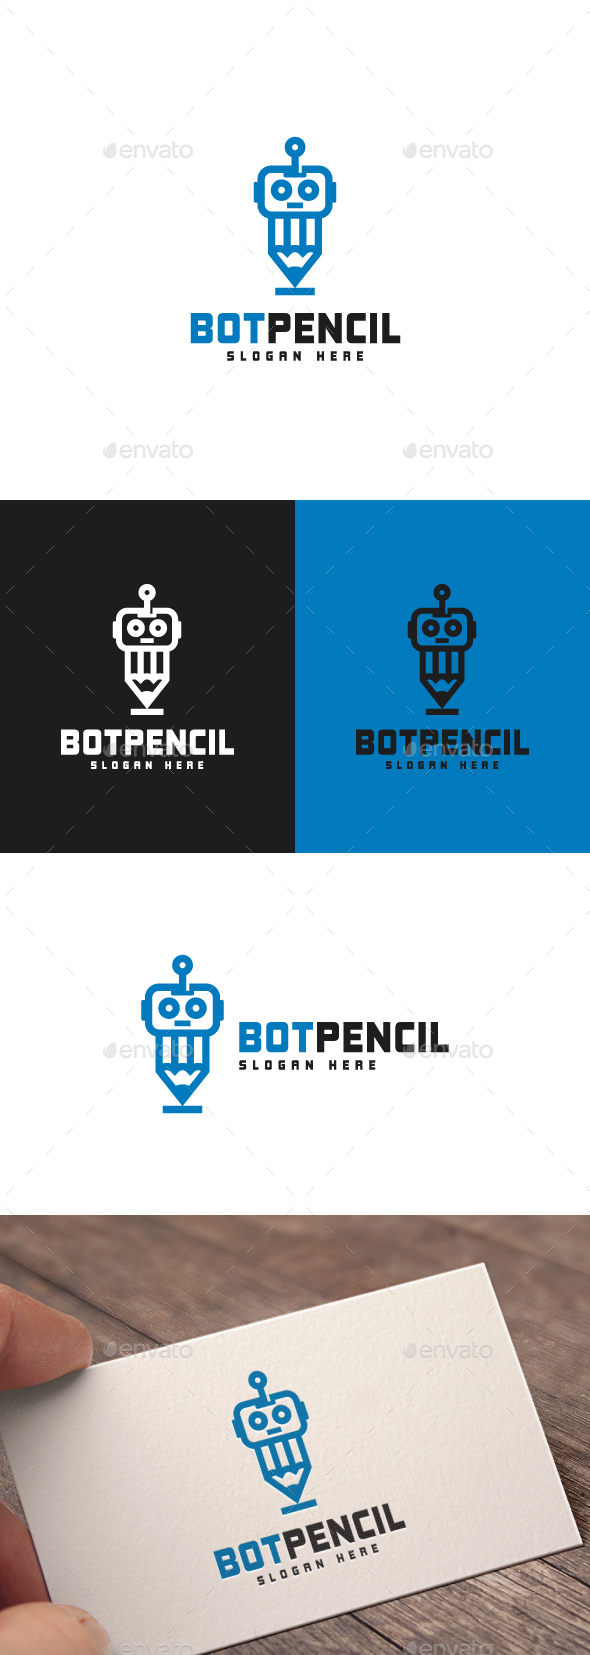 [DOWNLOAD]Bot Pencil Logo